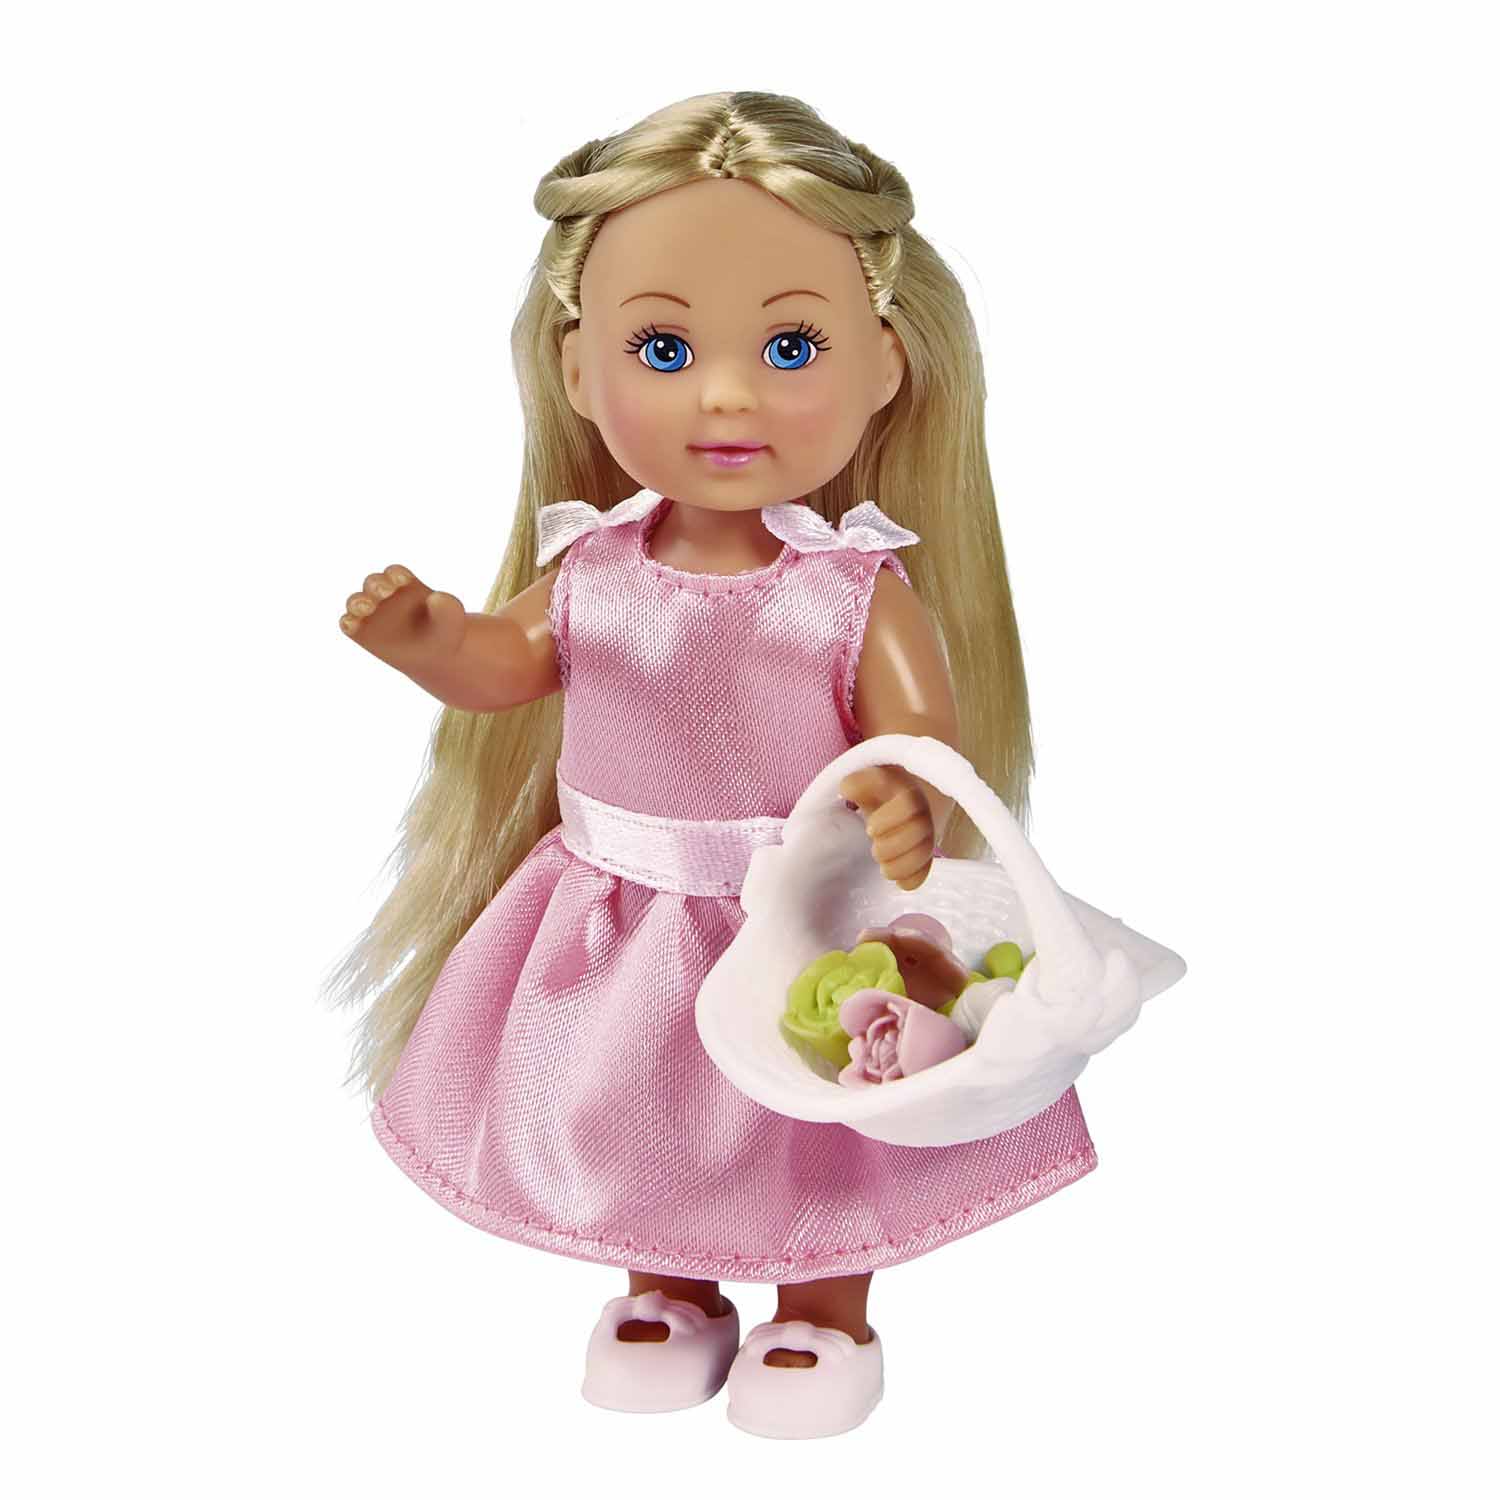 Подарок девочке на 8 марта — кукла для девочки